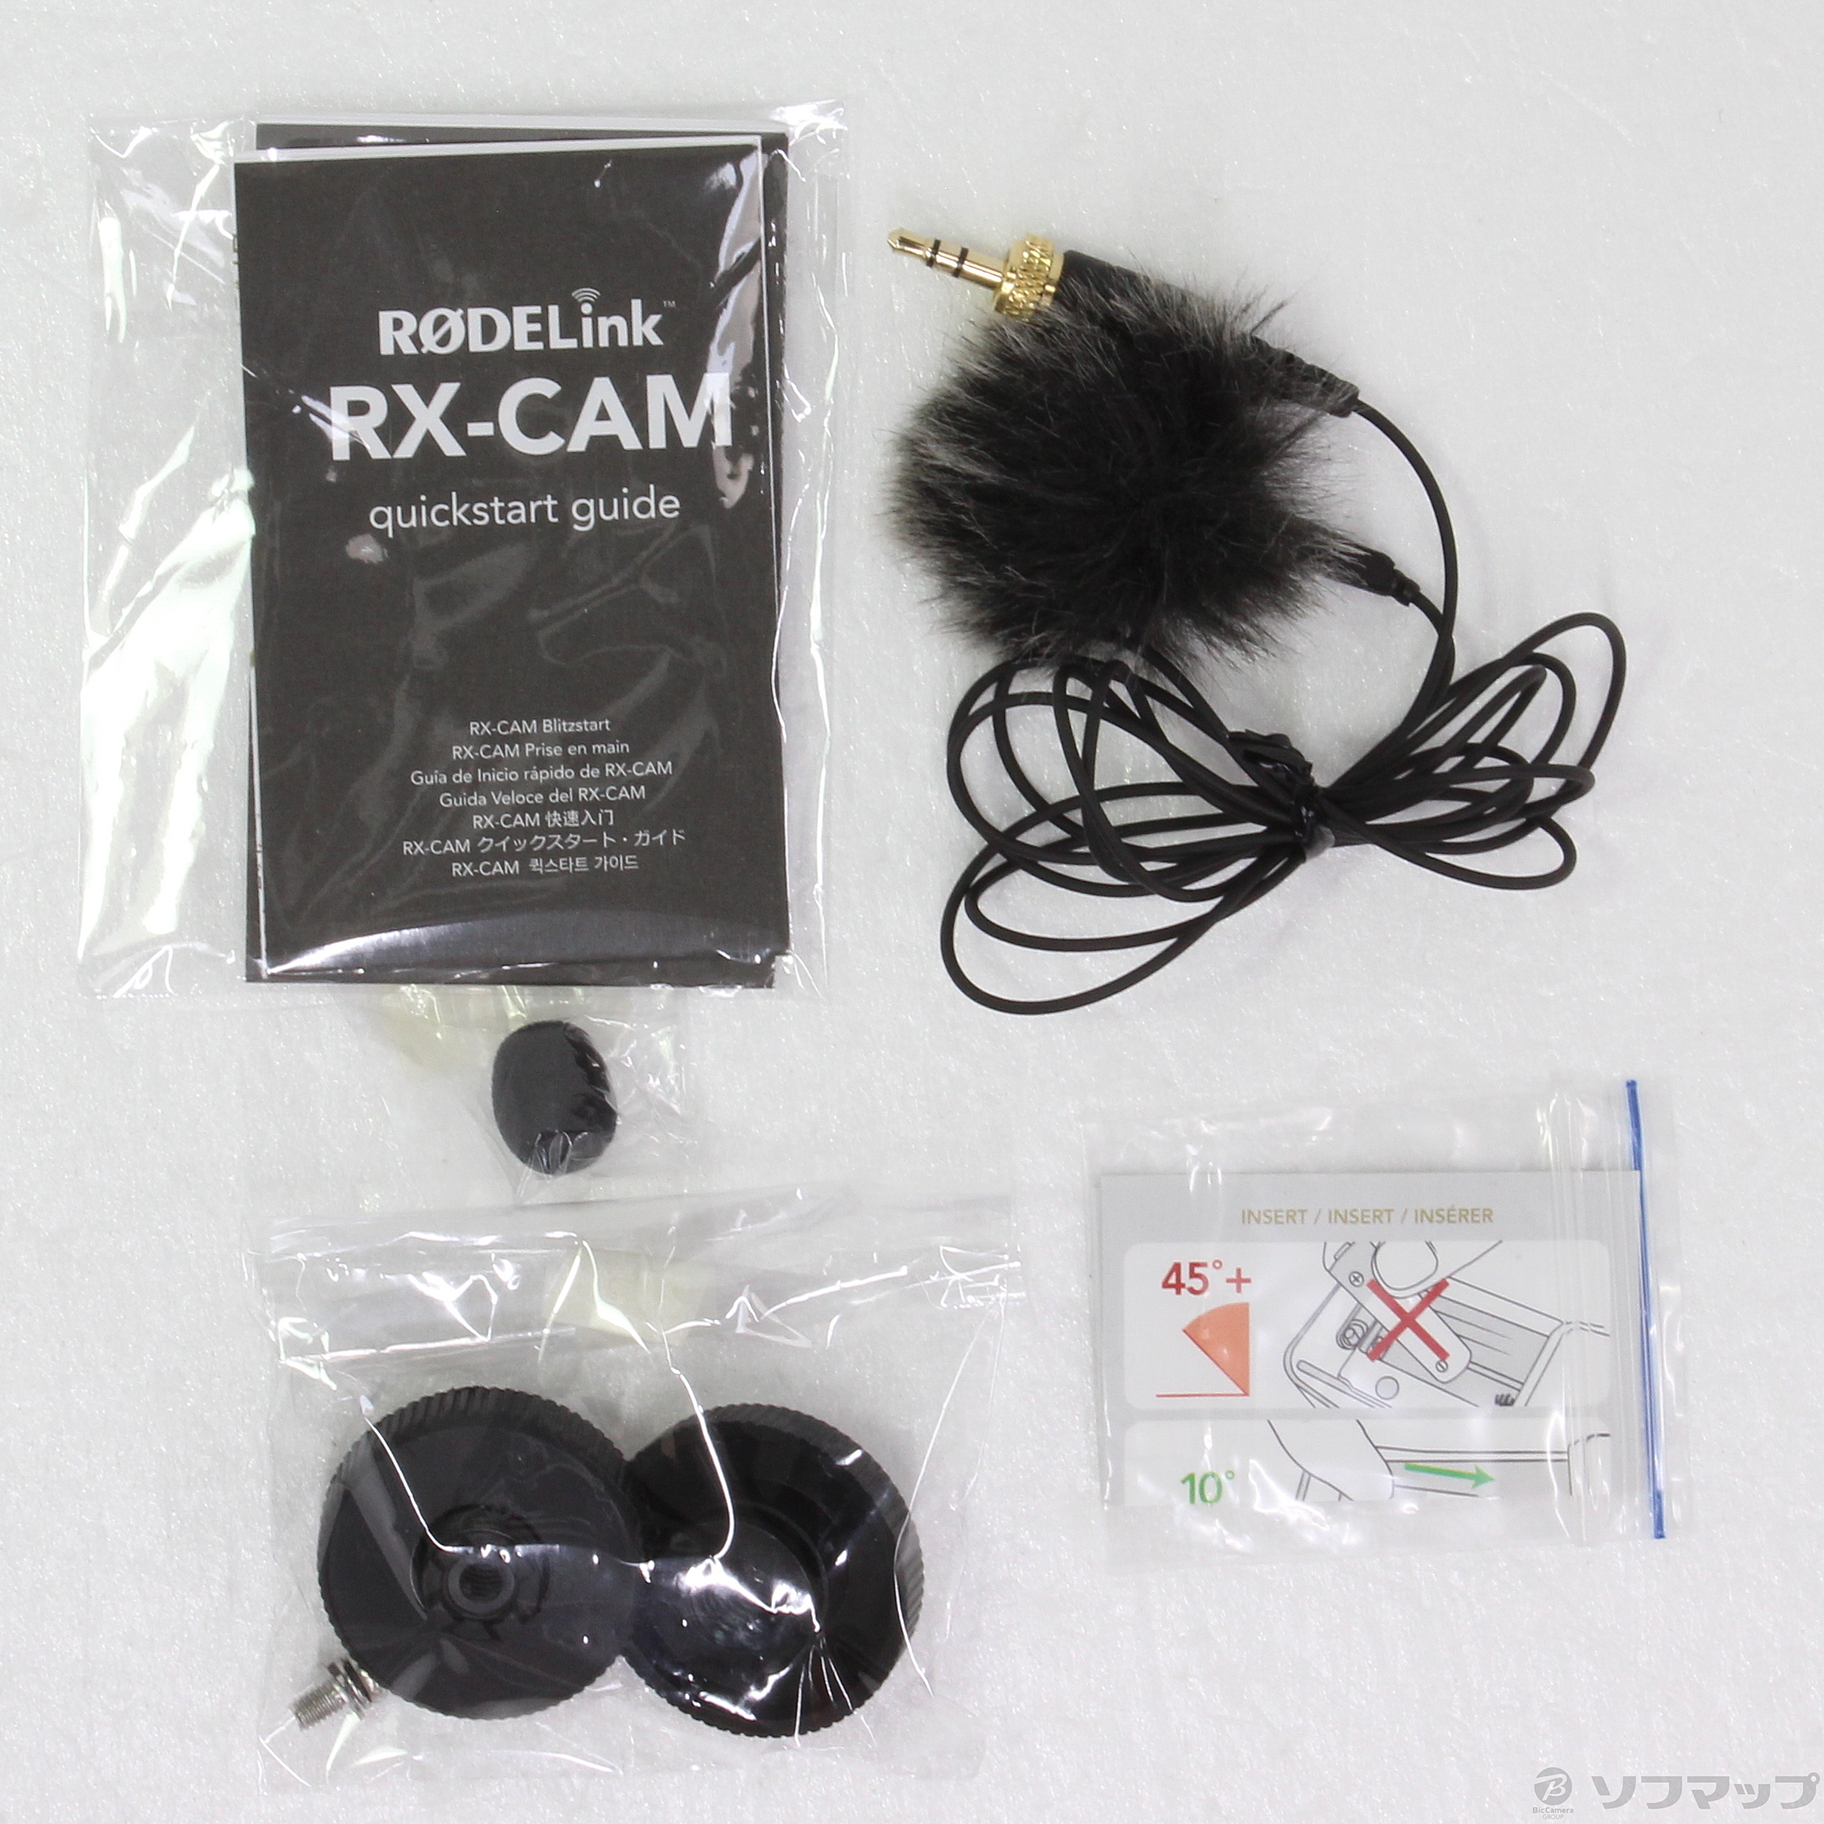 セール対象品 RODE Link Filmmaker Kit デジタルワイヤレスセット